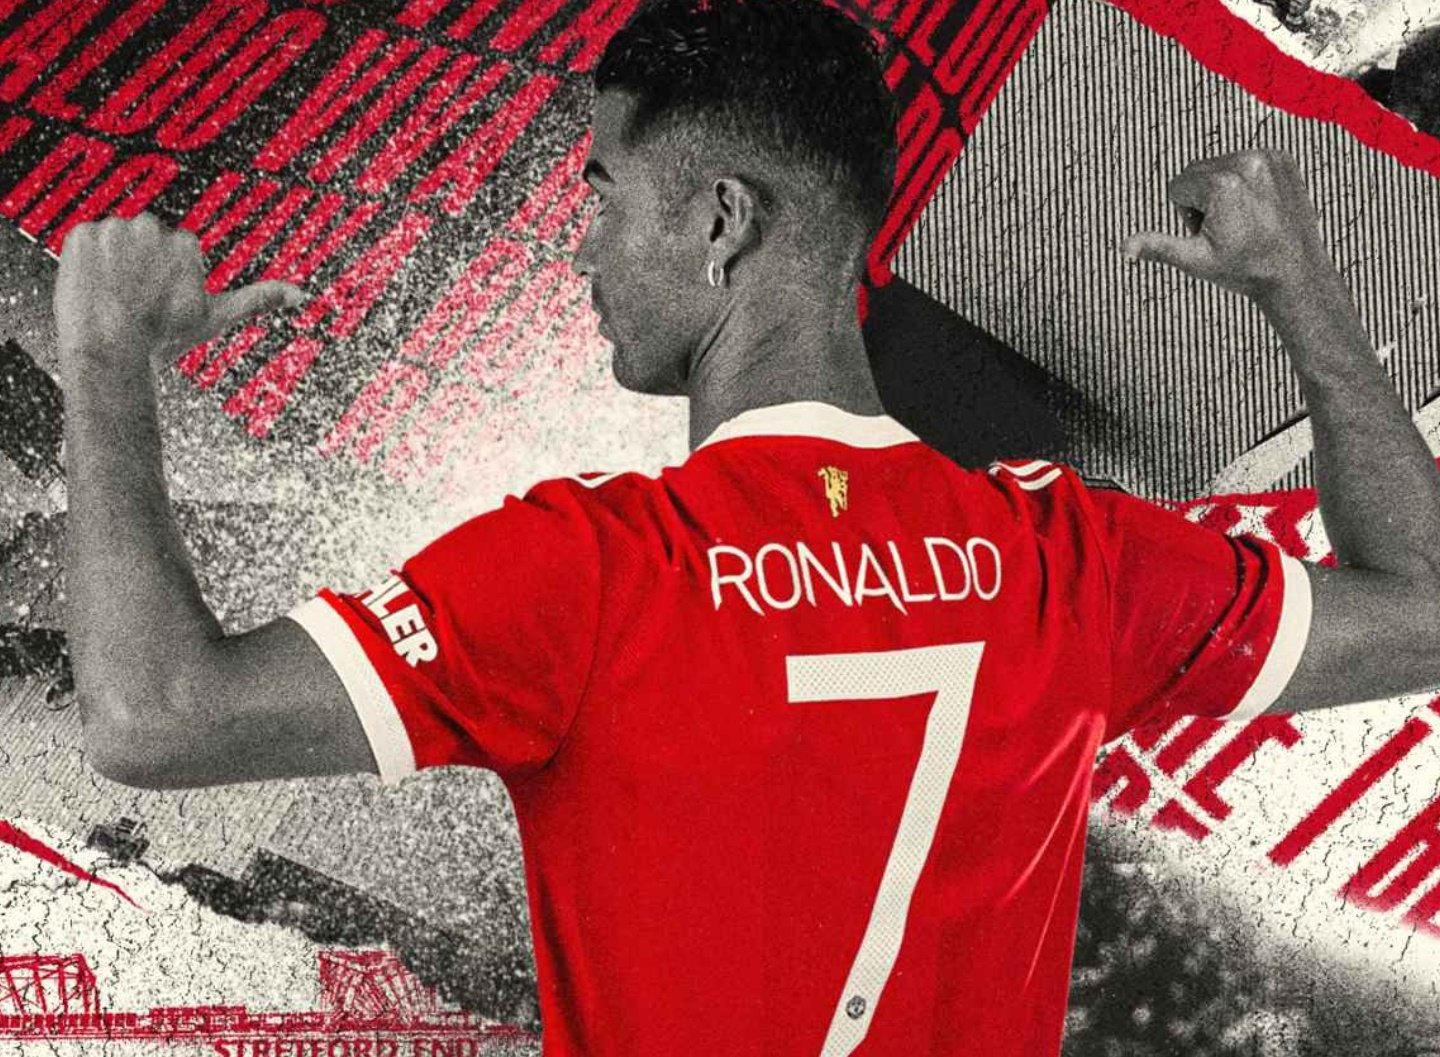 Manchester United Cristiano Ronaldo 2021 wallpaper